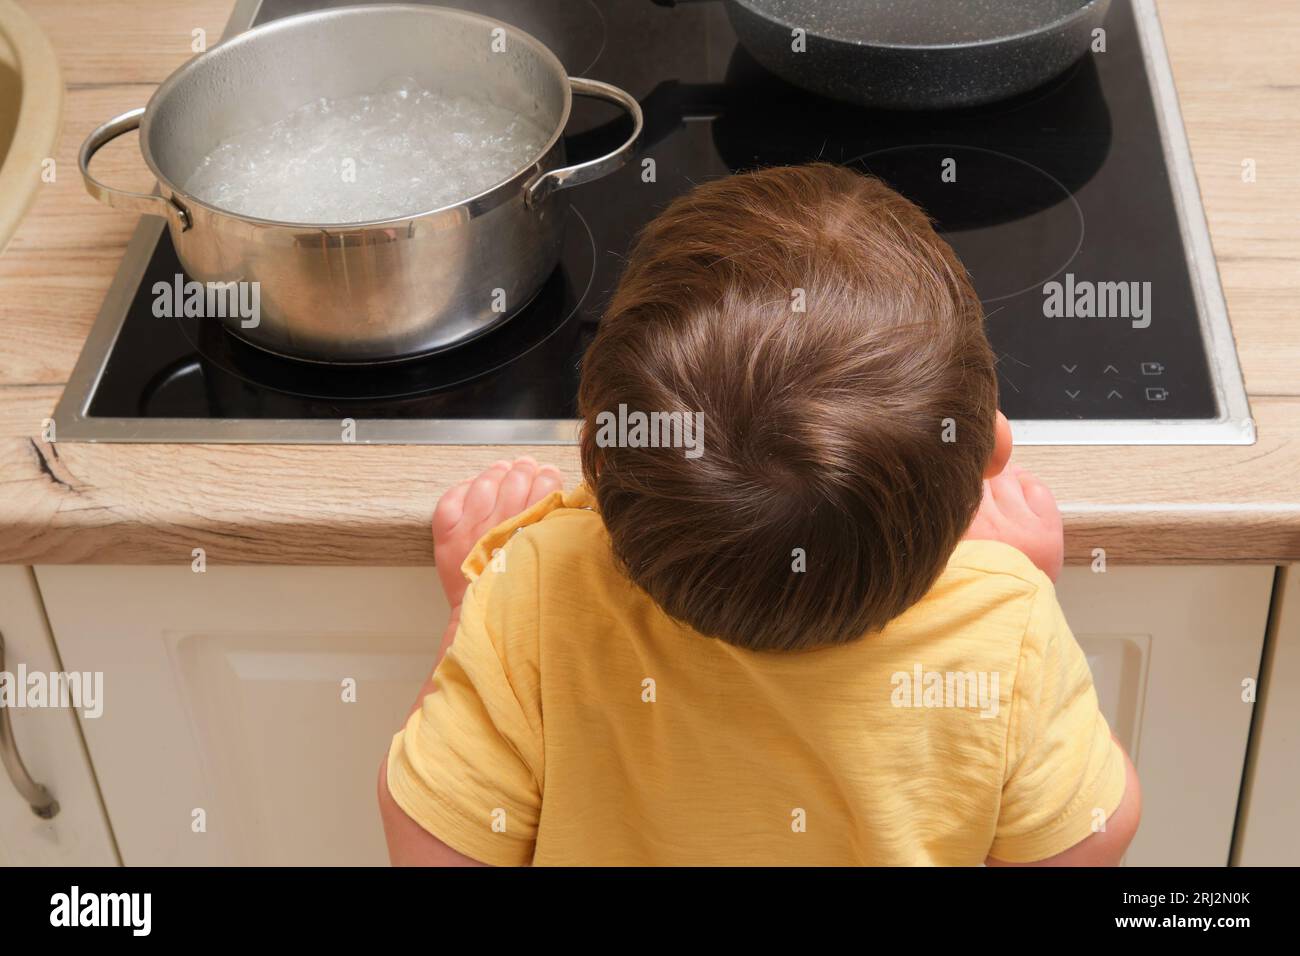 El niño pequeño sostiene un hervidor de agua caliente con agua hirviendo.  Problemas de seguridad de los niños en la habitación de la casa, niño  pequeño Fotografía de stock - Alamy